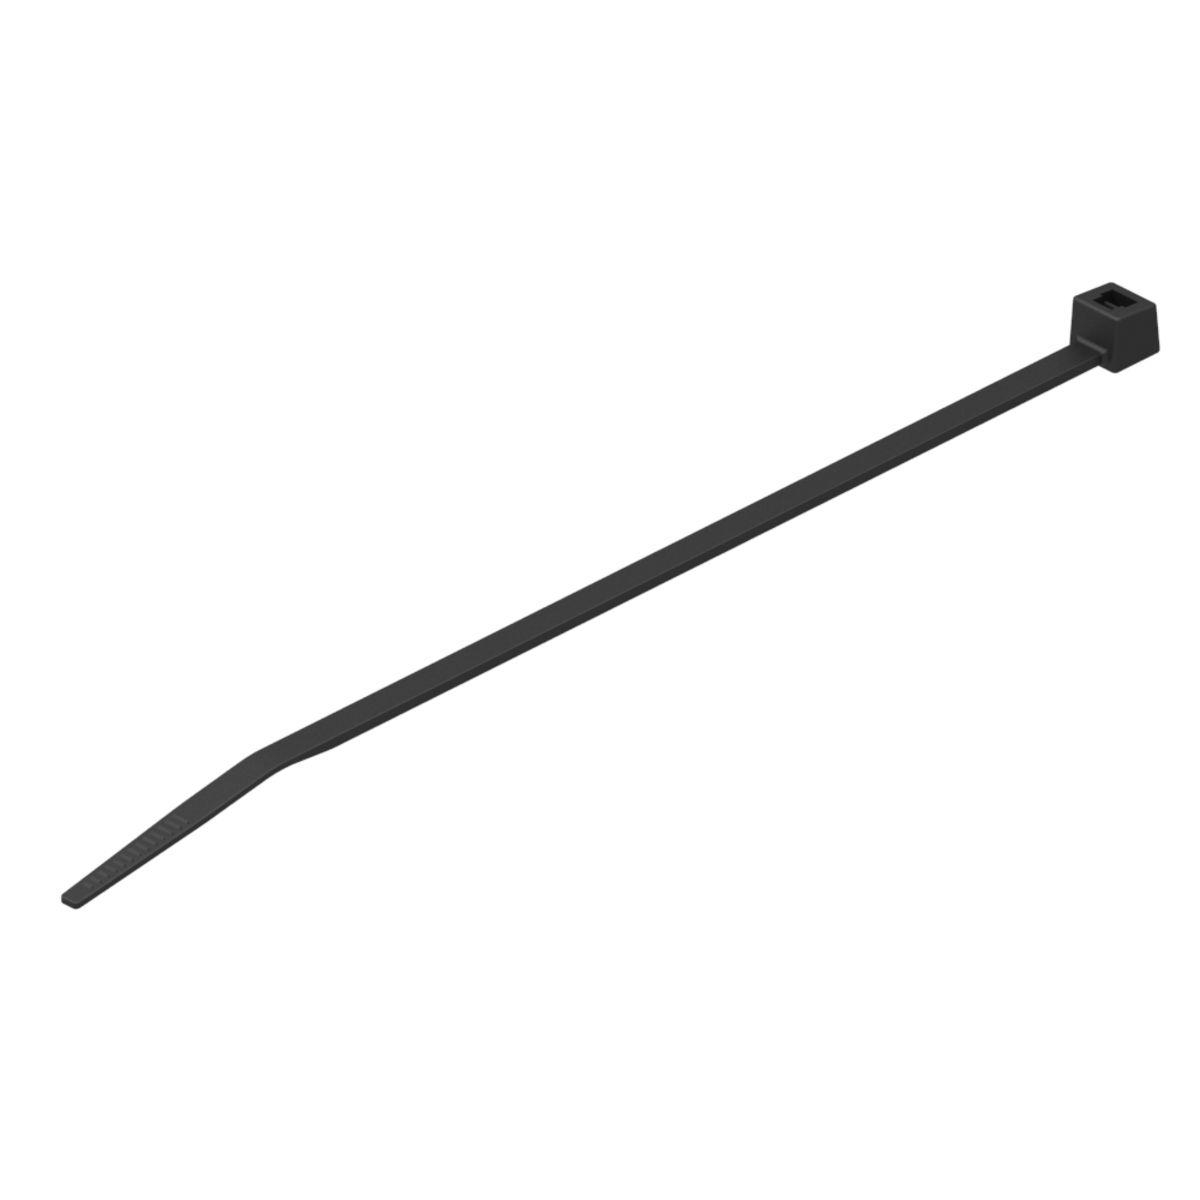 Hubbell CTNT50725D0 Nylon 12 Cable Tie, Tensile strength: 50 Lbs, Color: Black, 25.60"L, 0.19"W, 7.30" Bundle Dia. 